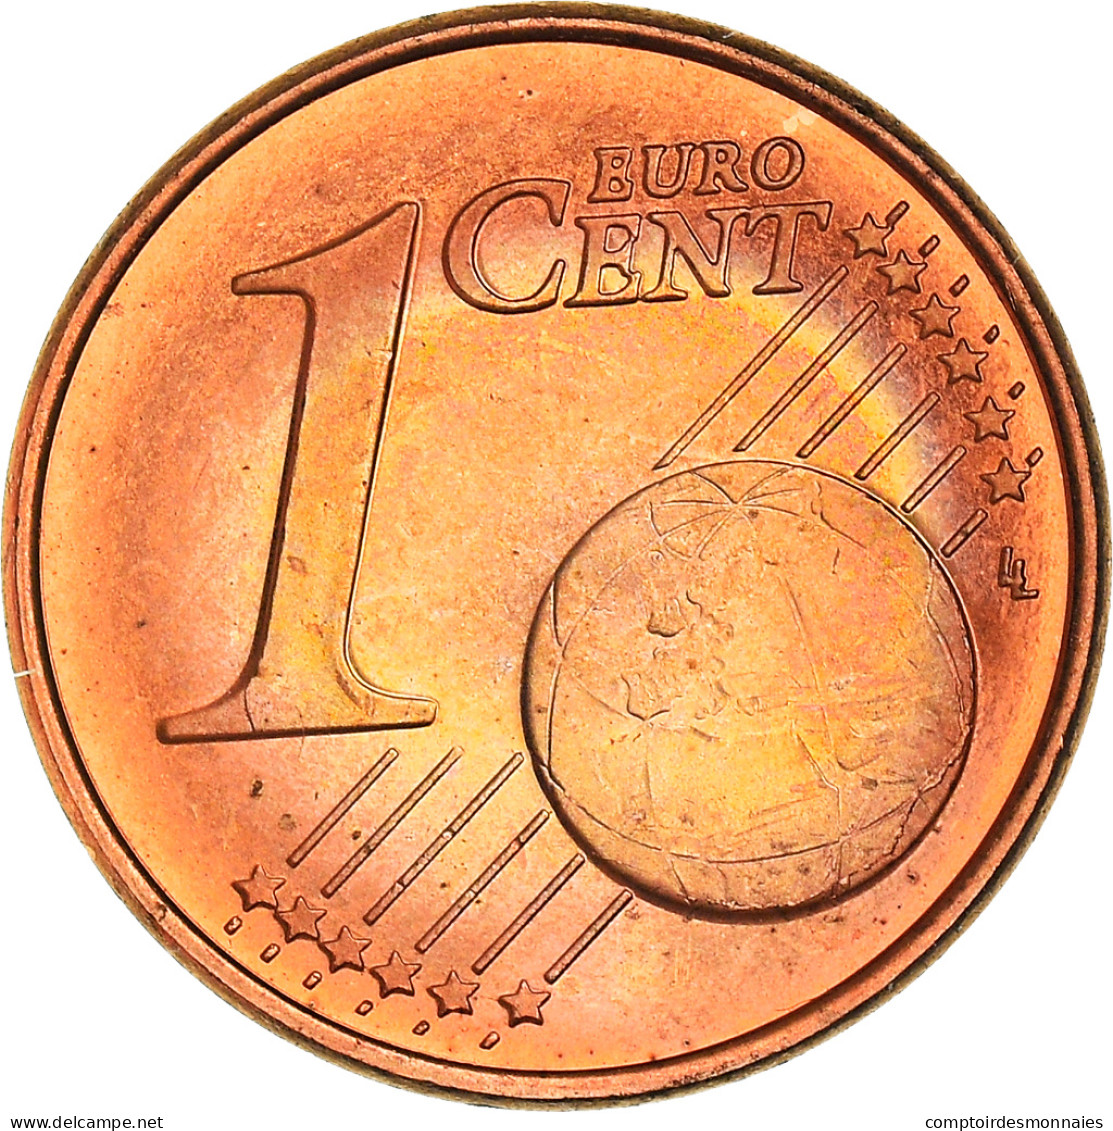 Slovénie, 1 Cent, A Stork, 2007, SPL+, Copper Plated Steel - Slovenia